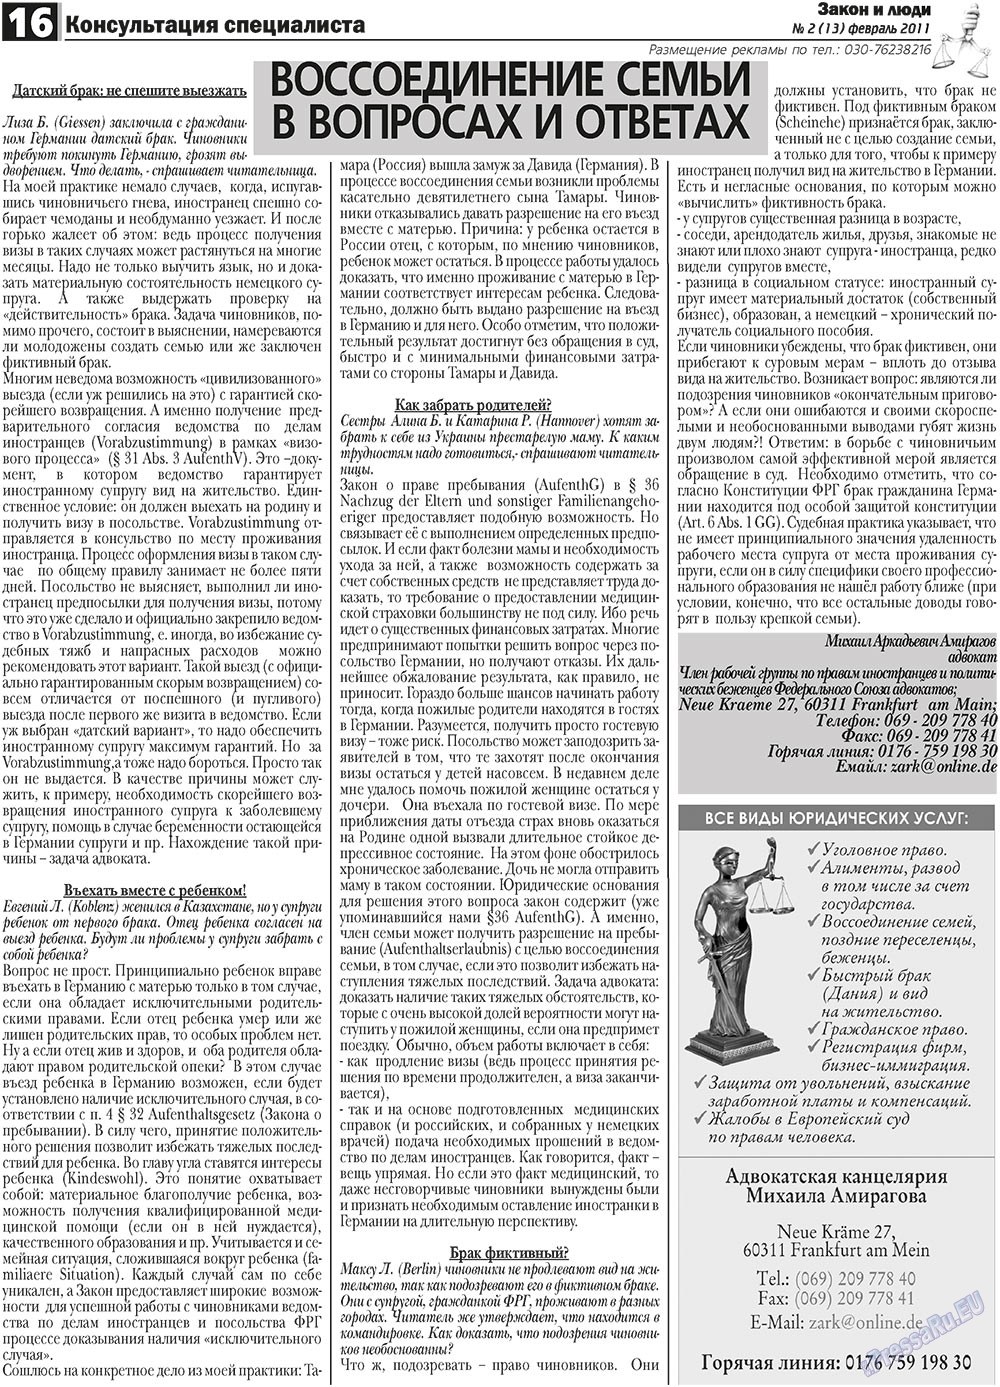 Закон и люди, газета. 2011 №2 стр.16